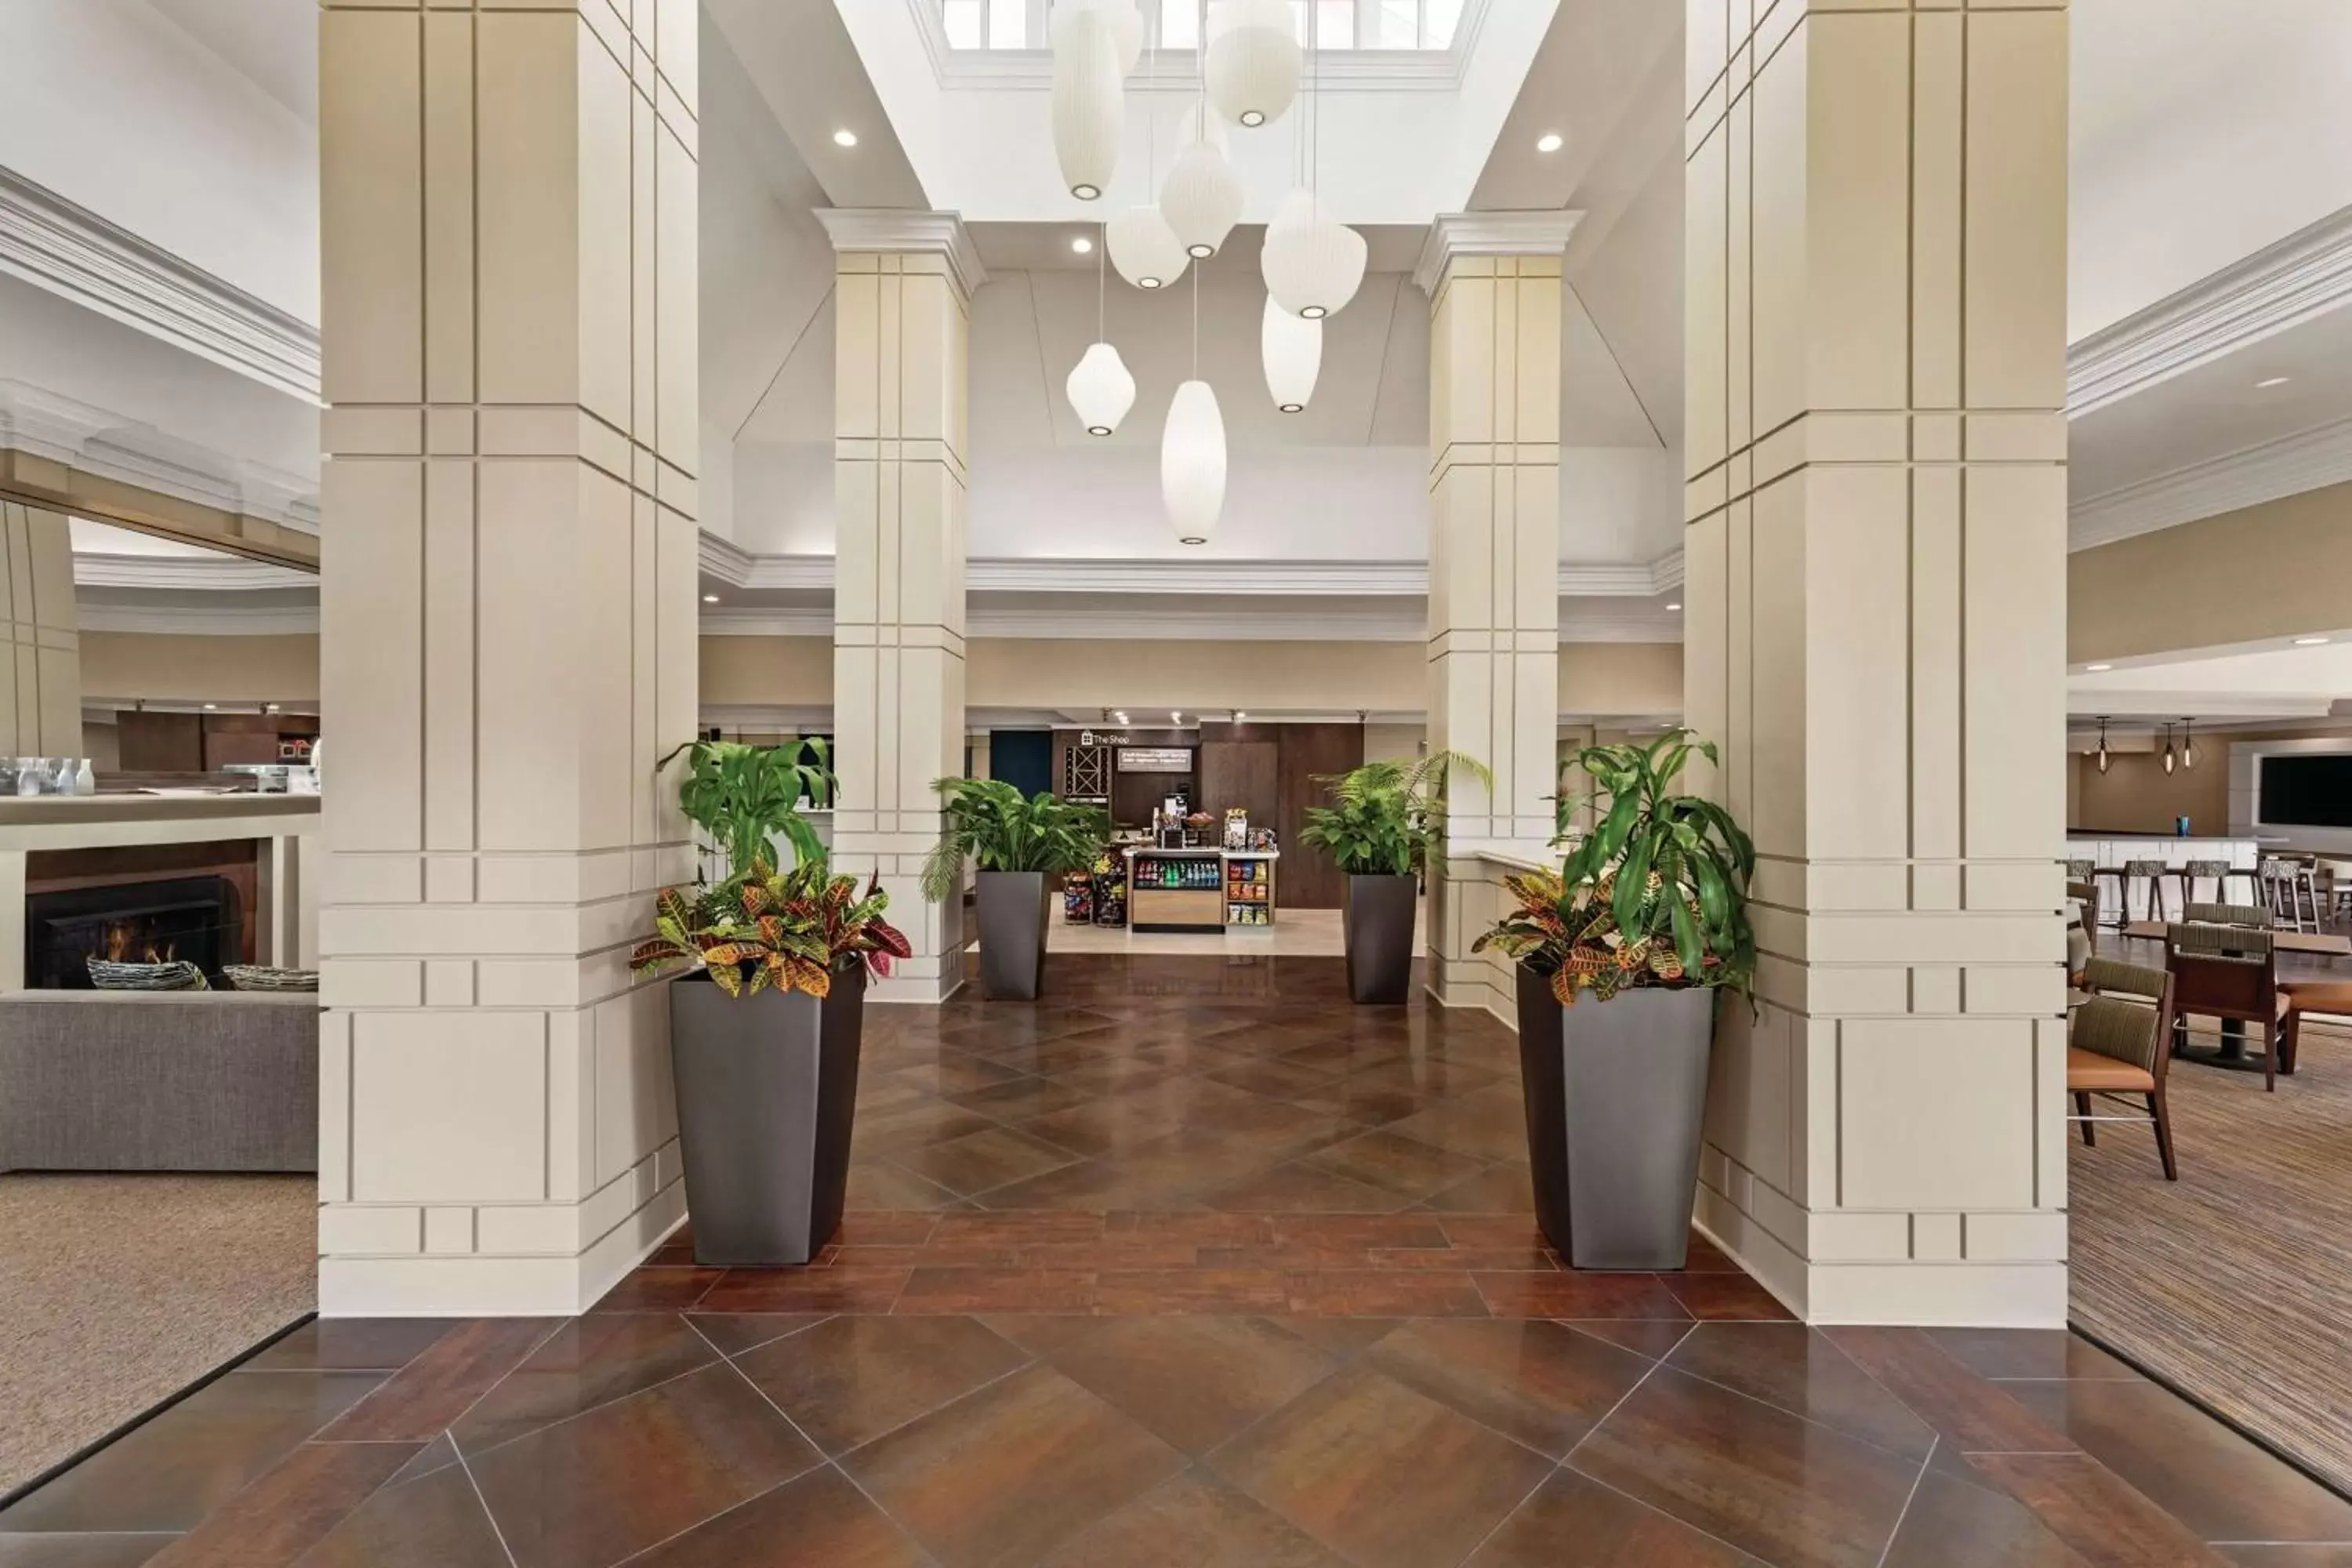 Lobby or reception, Lobby/Reception in Hilton Garden Inn Oxford/Anniston, AL